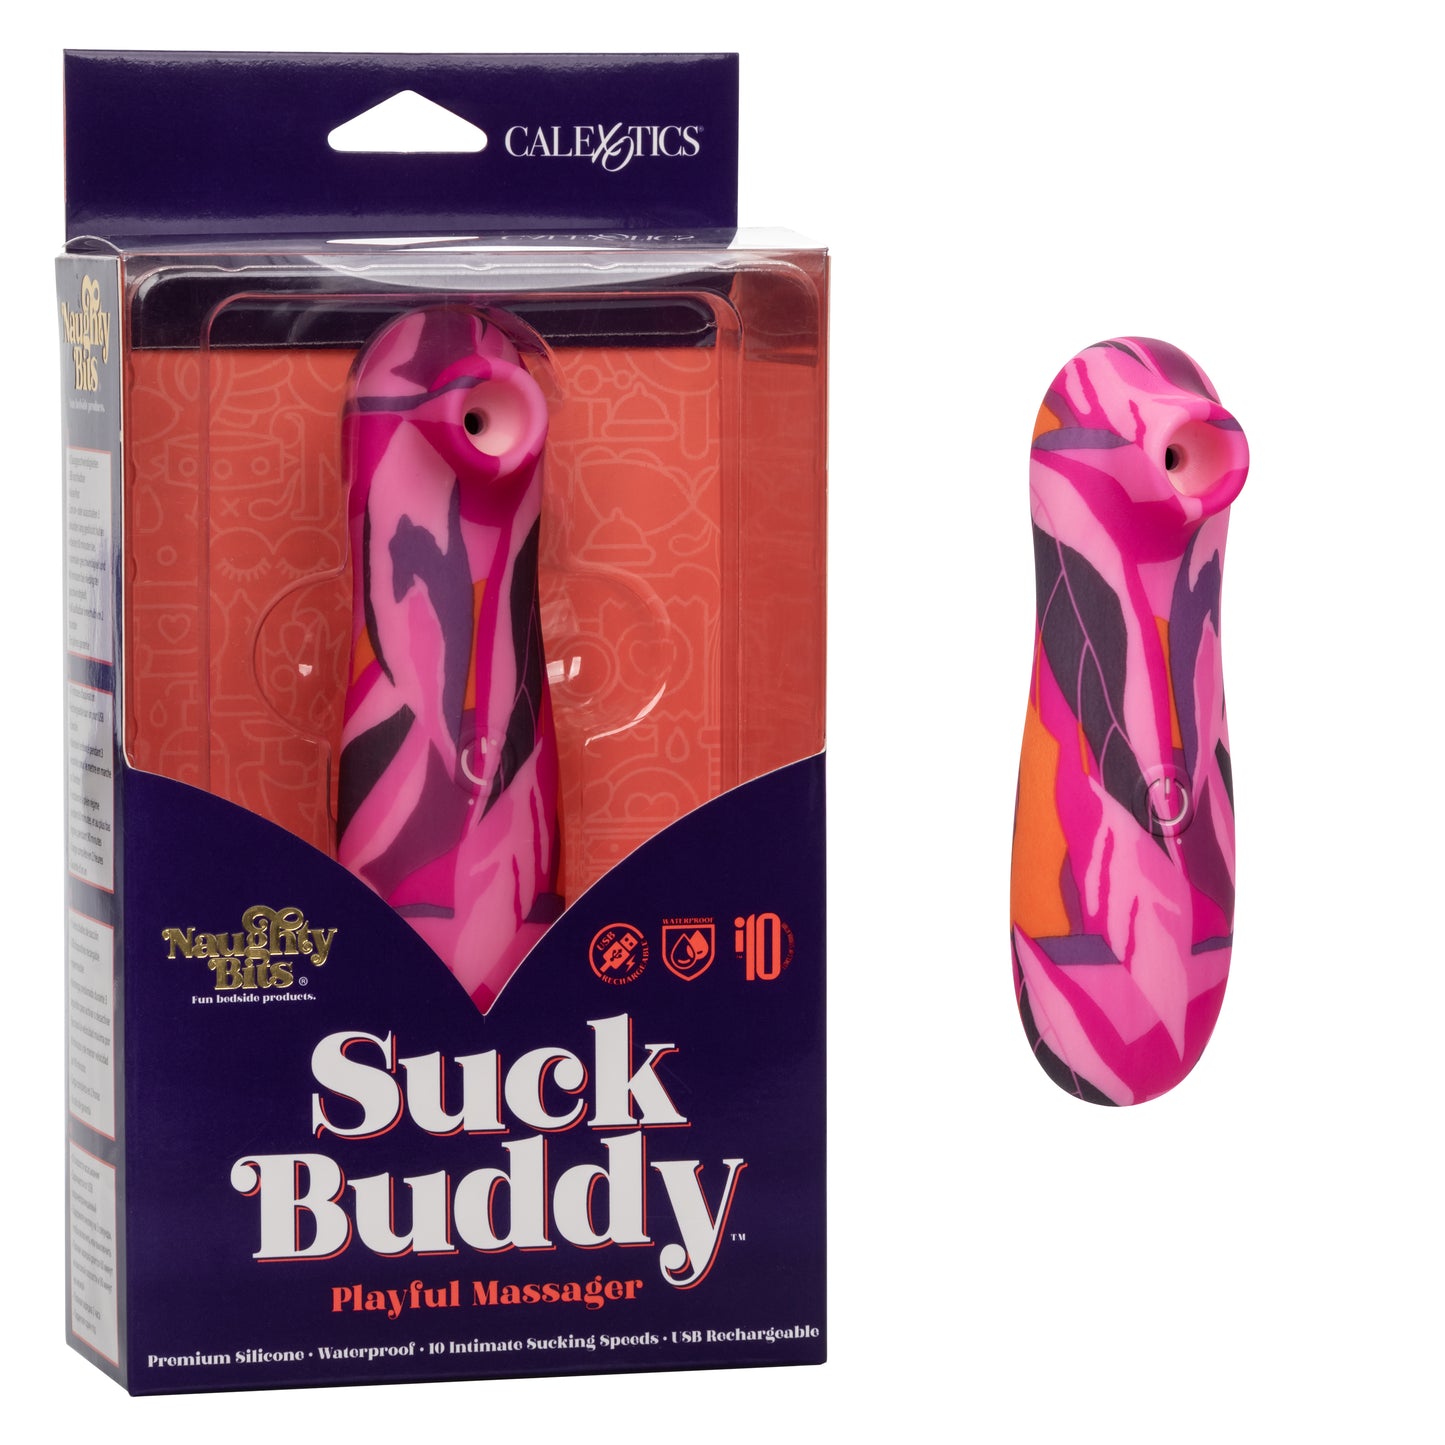 Naughty Bits® Suck Buddy™ Playful Massager